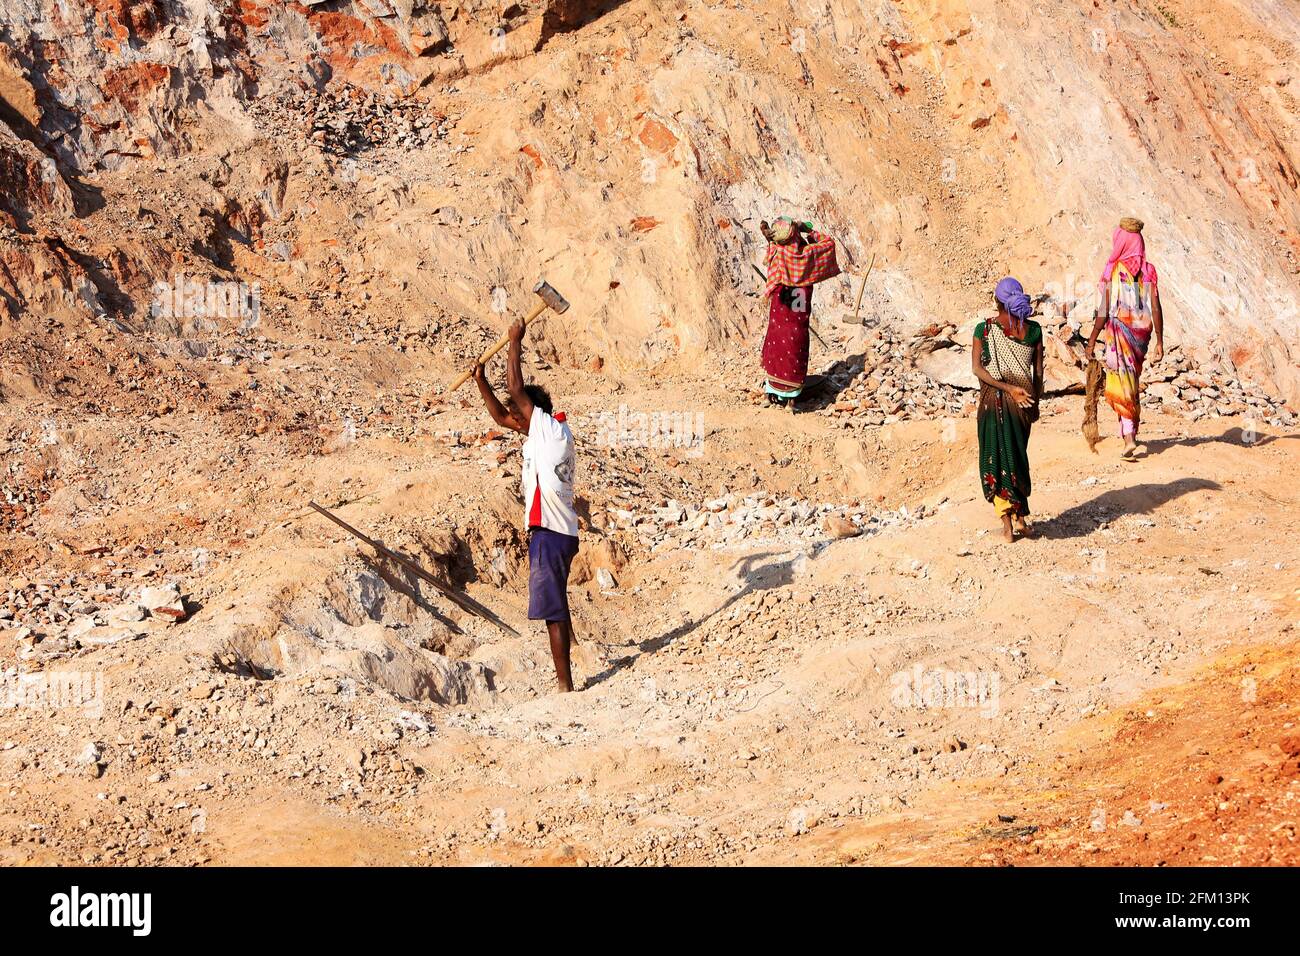 Travailleurs de la carrière de pierre de la vallée d'Araku, Andhra Pradesh, Inde Banque D'Images